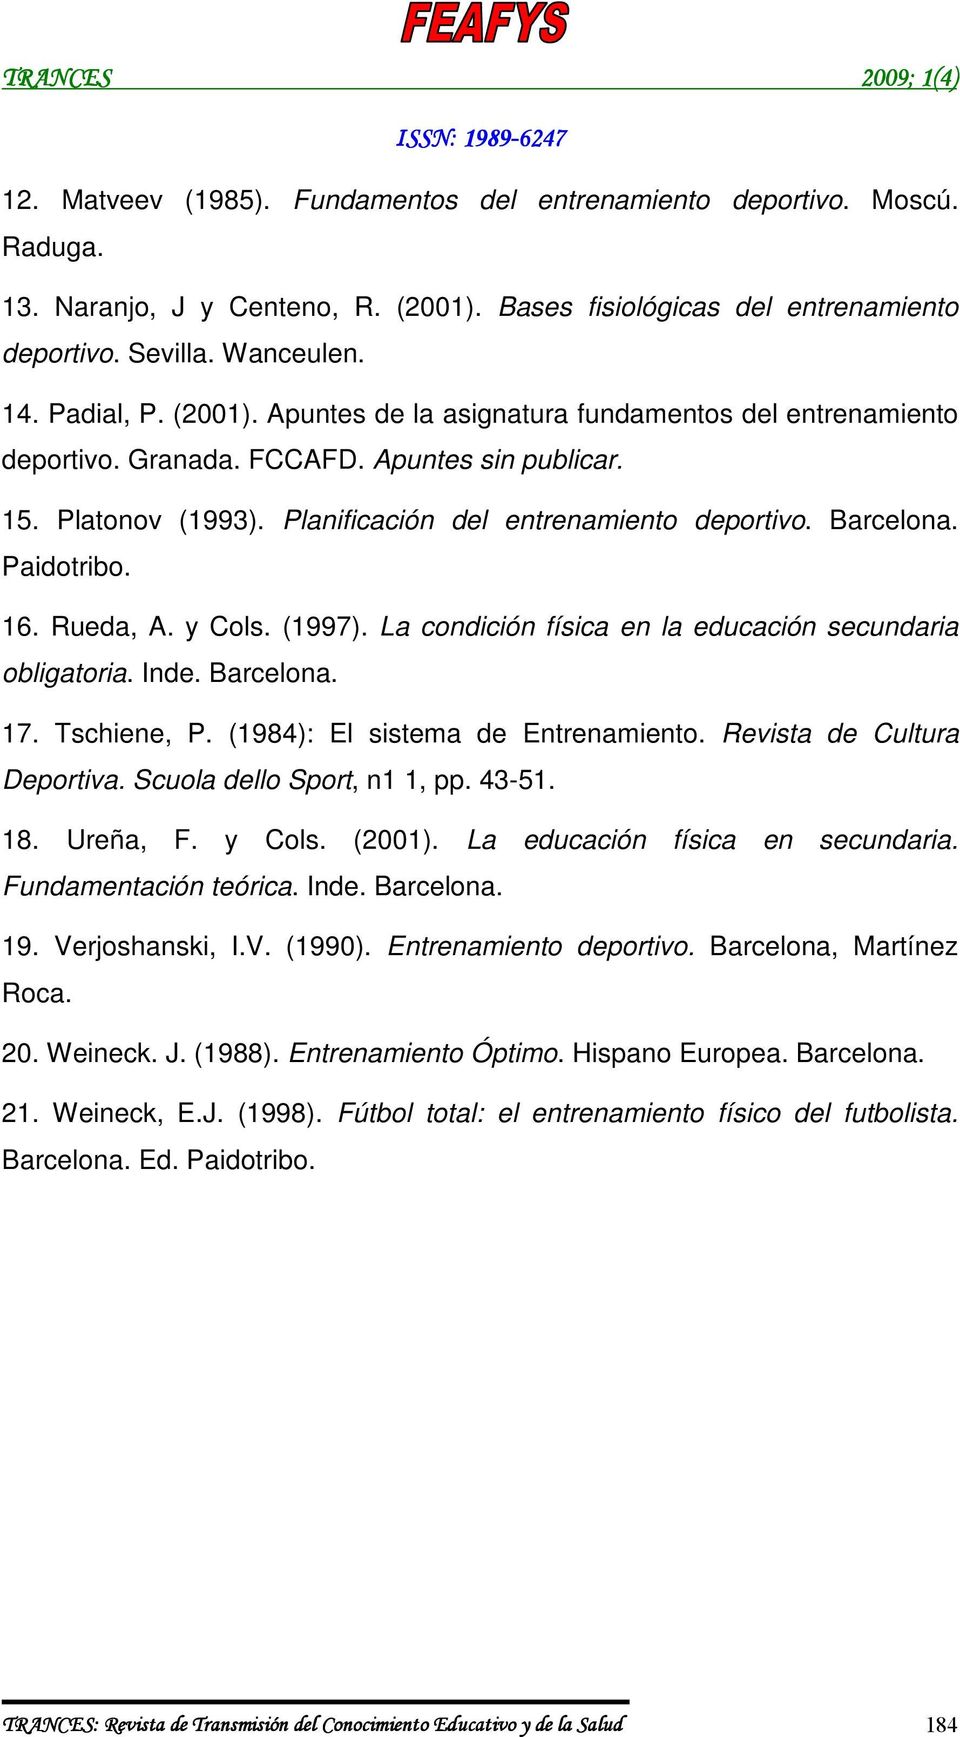 16. Rueda, A. y Cols. (1997). La condición física en la educación secundaria obligatoria. Inde. Barcelona. 17. Tschiene, P. (1984): El sistema de Entrenamiento. Revista de Cultura Deportiva.